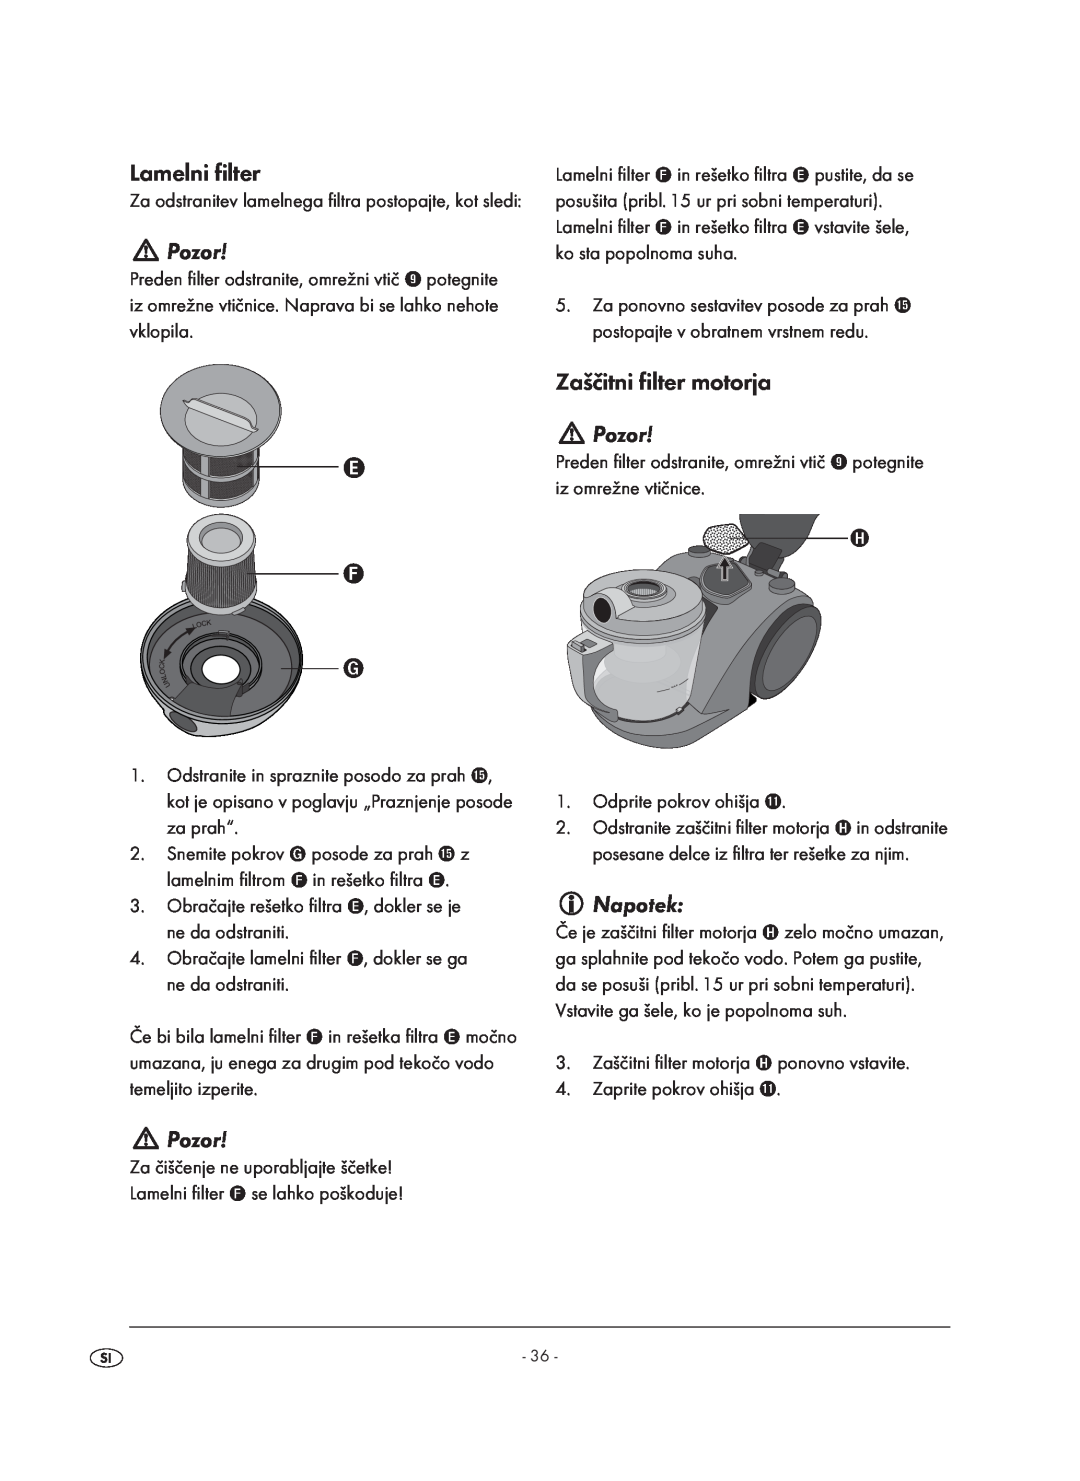 Kompernass KH 1410 operating instructions Lamelni filter, Pozor, Zaščitni filter motorja, Napotek 